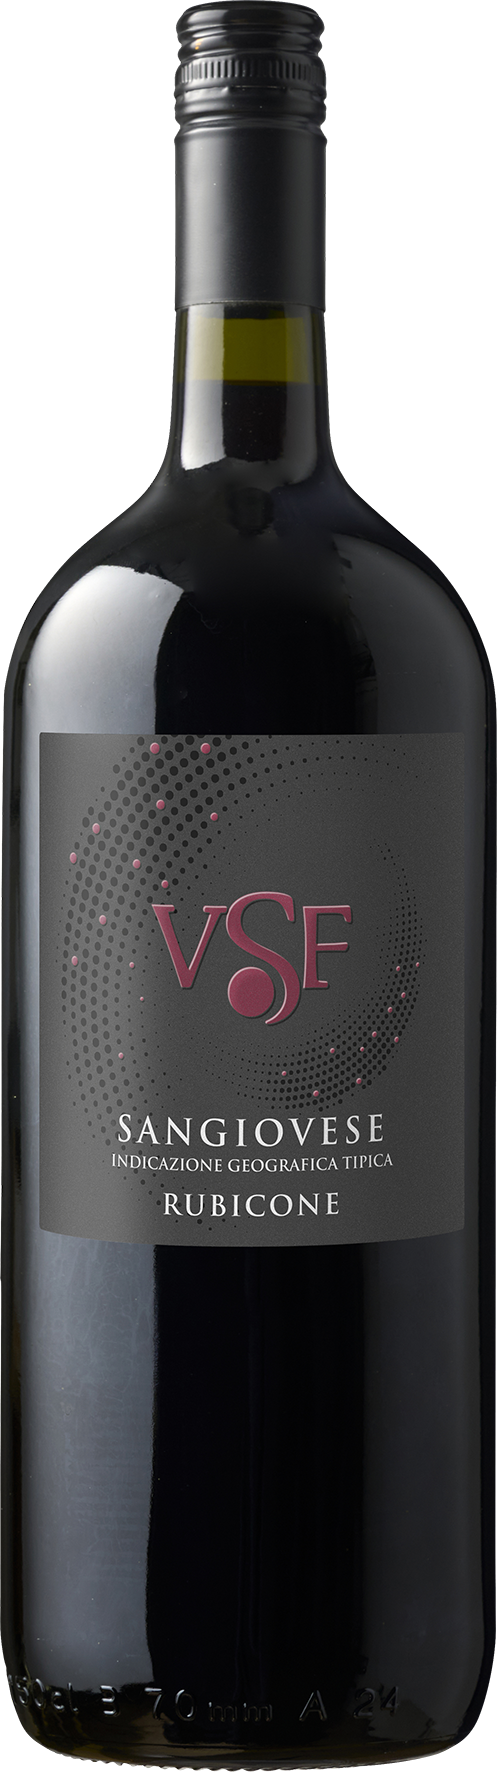 Sangiovese VSF 1,5l